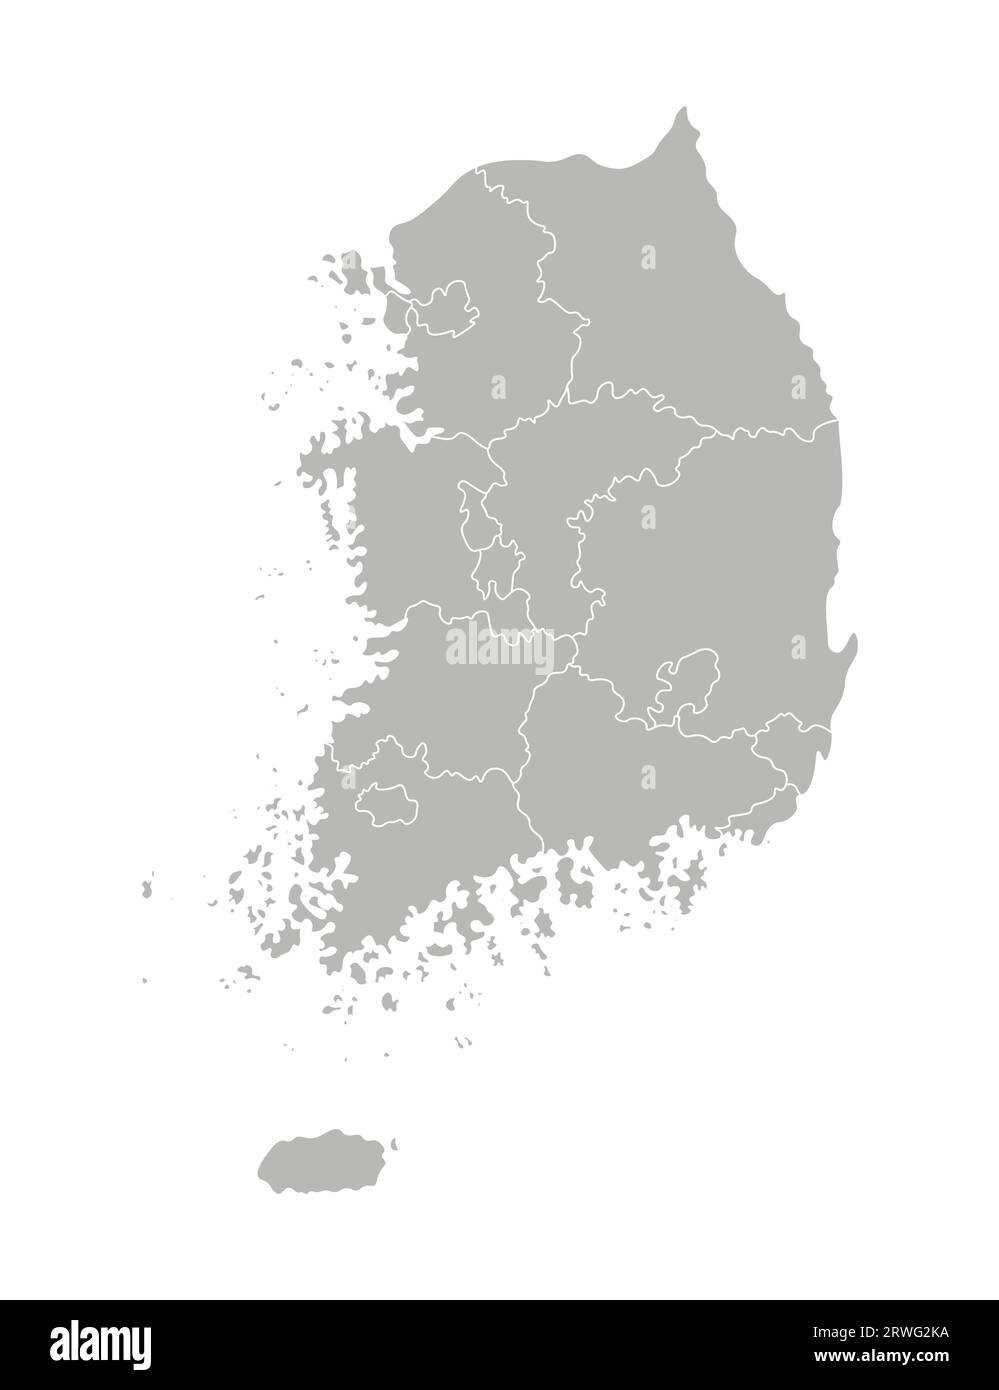 Illustration isolée vectorielle de la carte administrative simplifiée de la Corée du Sud (République de Corée). Frontières des provinces (régions). Silhouettes grises Illustration de Vecteur